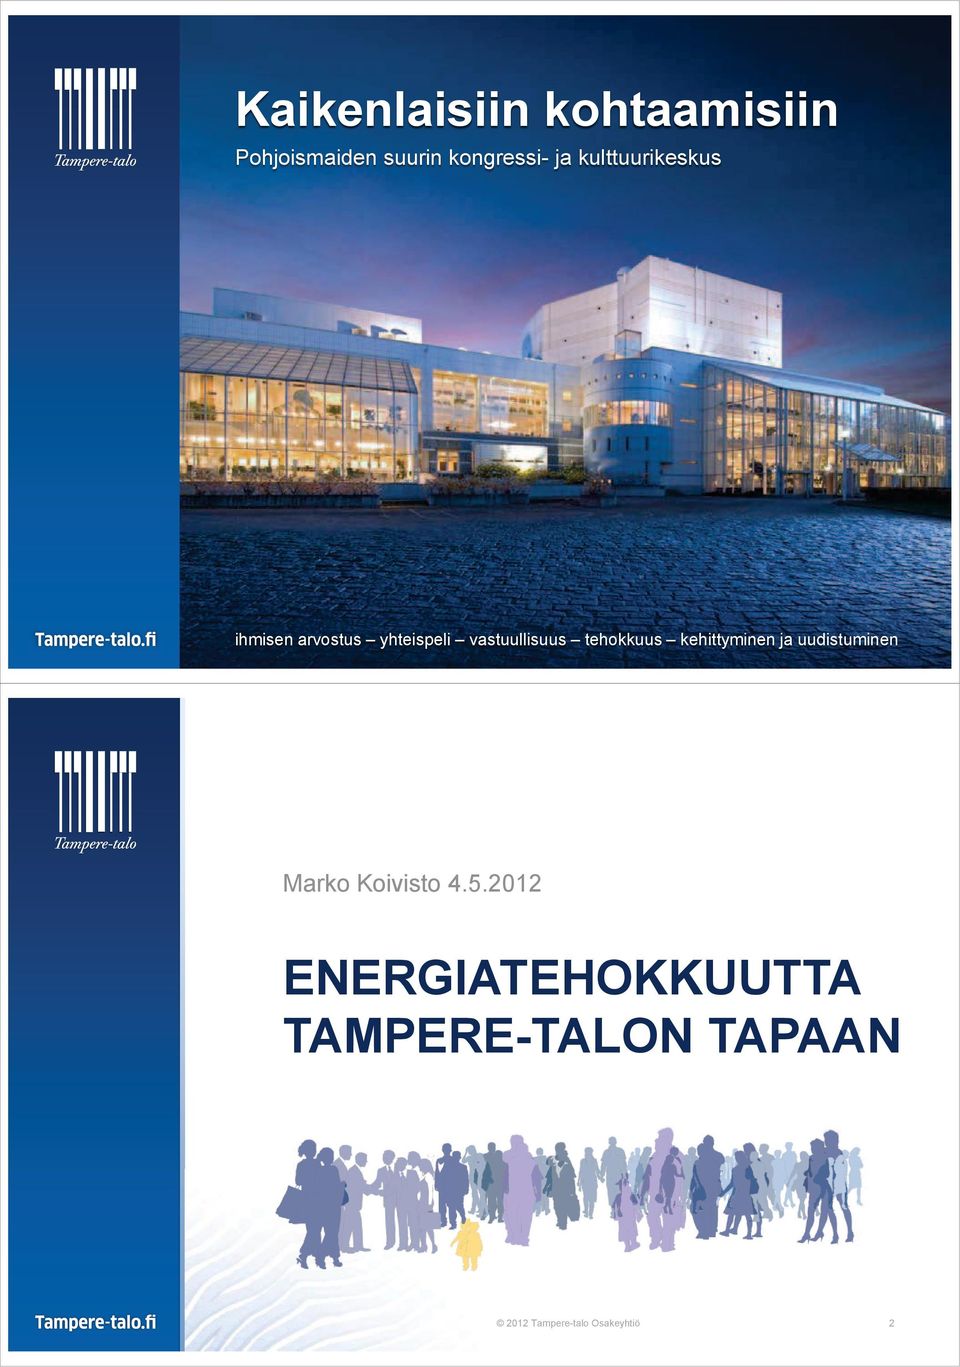 Tampere-talo tehokkuus Osakeyhtiö kehittyminen ja uudistuminen 1 Marko